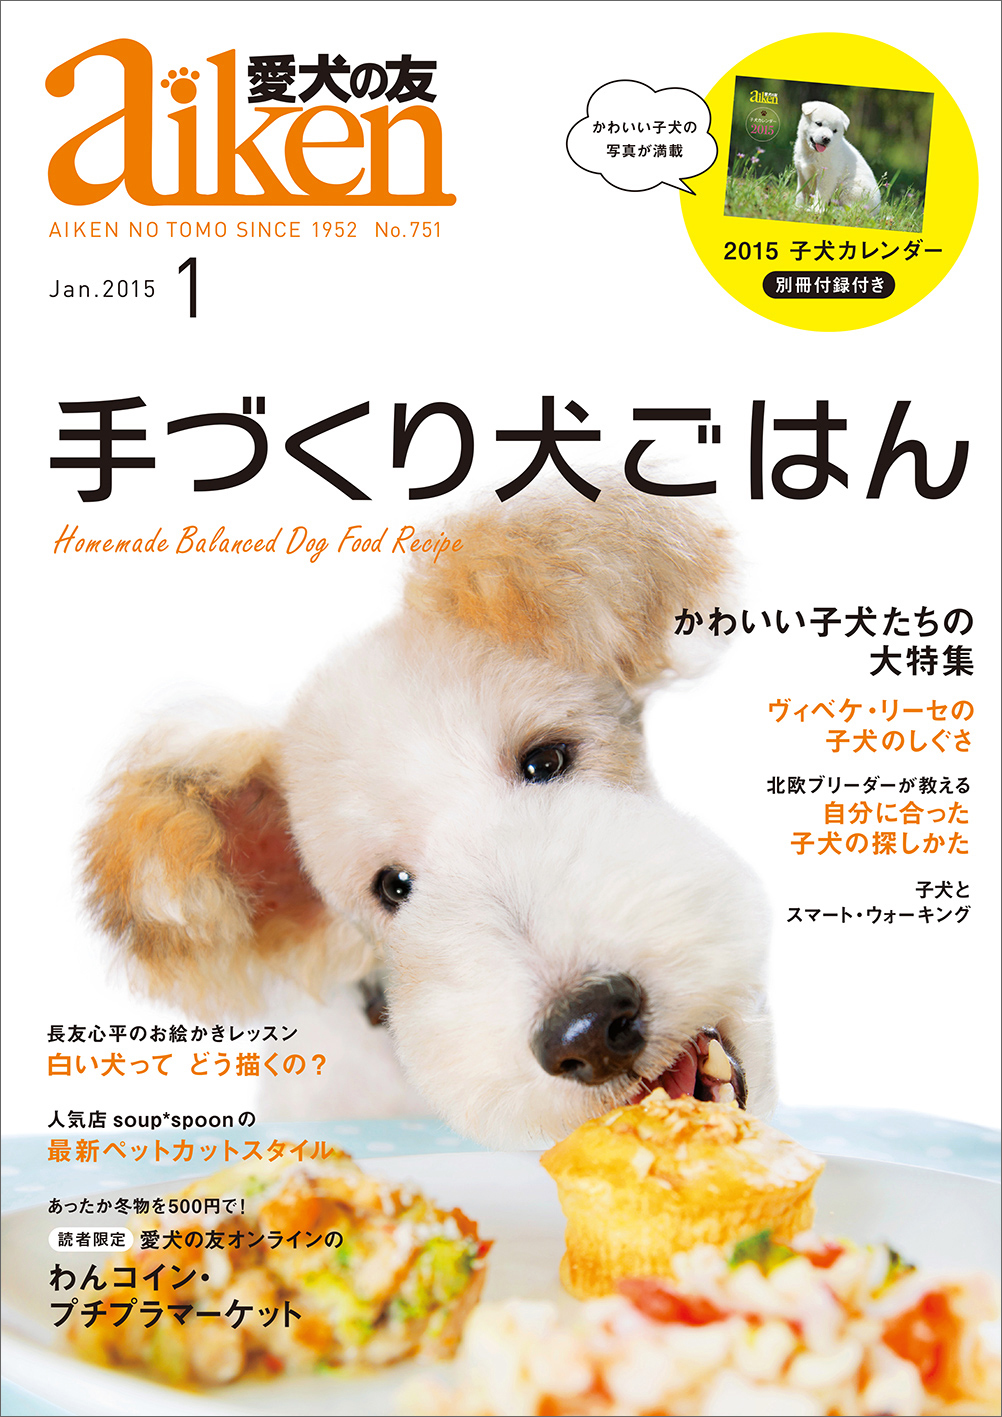 雑誌 愛犬の友 がリニューアル 犬好きのための総合誌へ 12月25日発売 株式会社誠文堂新光社のプレスリリース